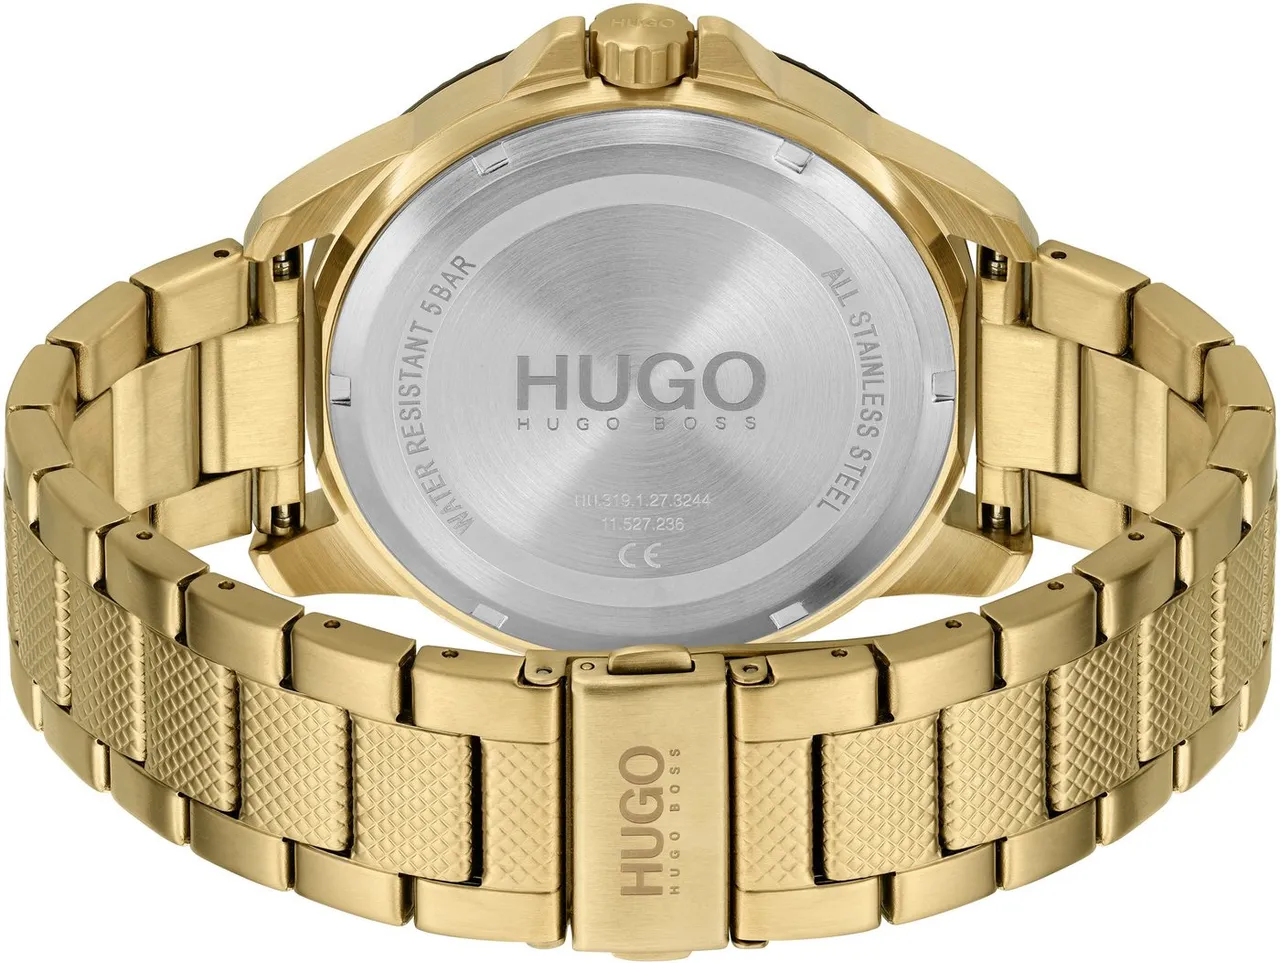 HUGO Multifunktionsuhr #SPORT, 1530196, Quarzuhr, Armbanduhr, Herrenuhr, Datum, 12/24-Stunden-Anzeige